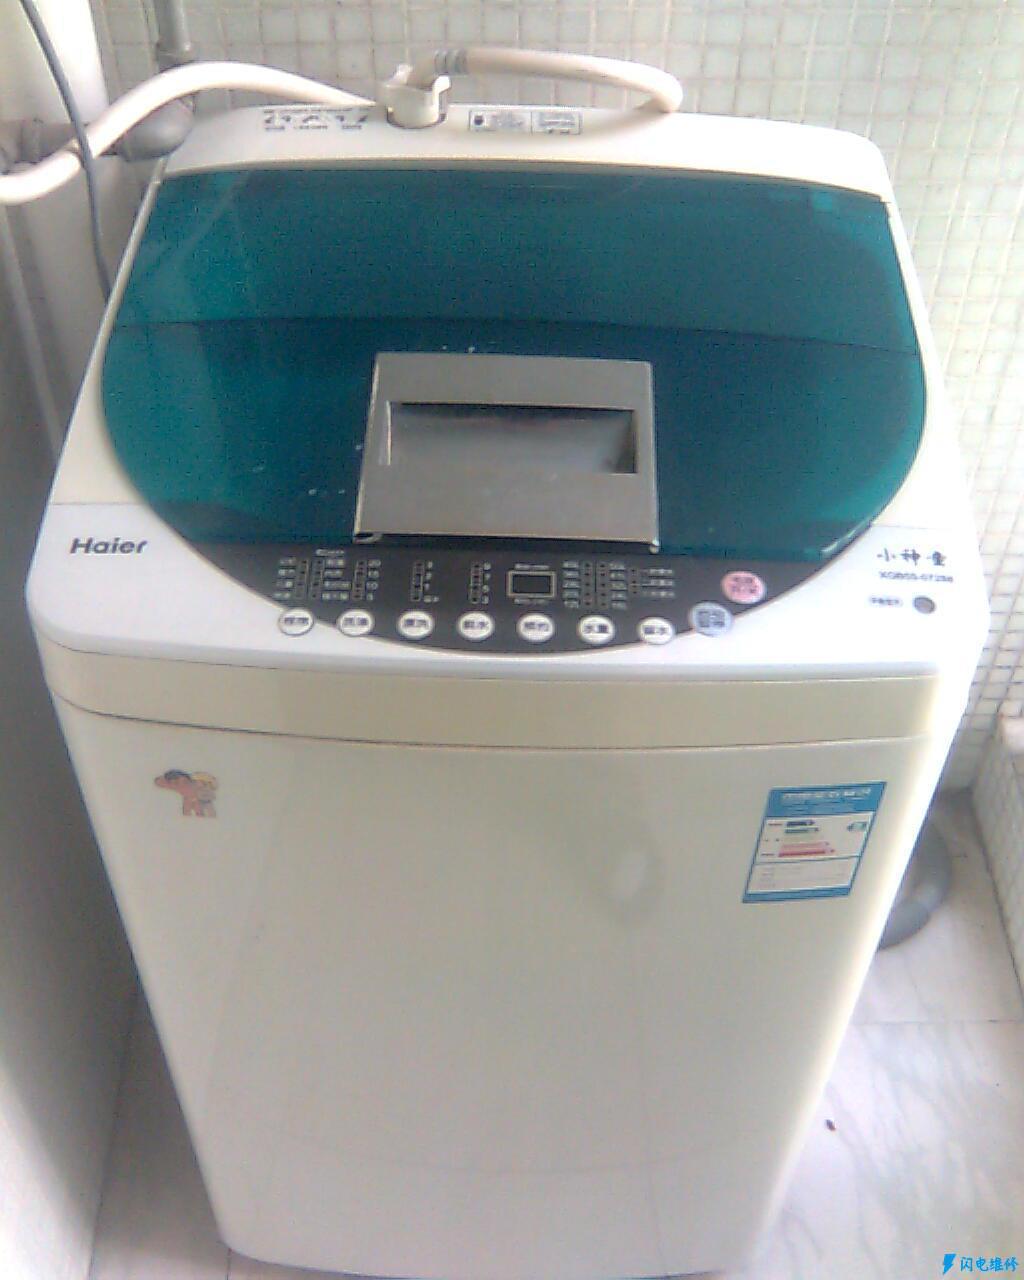 自贡沿滩区洗衣机维修服务部